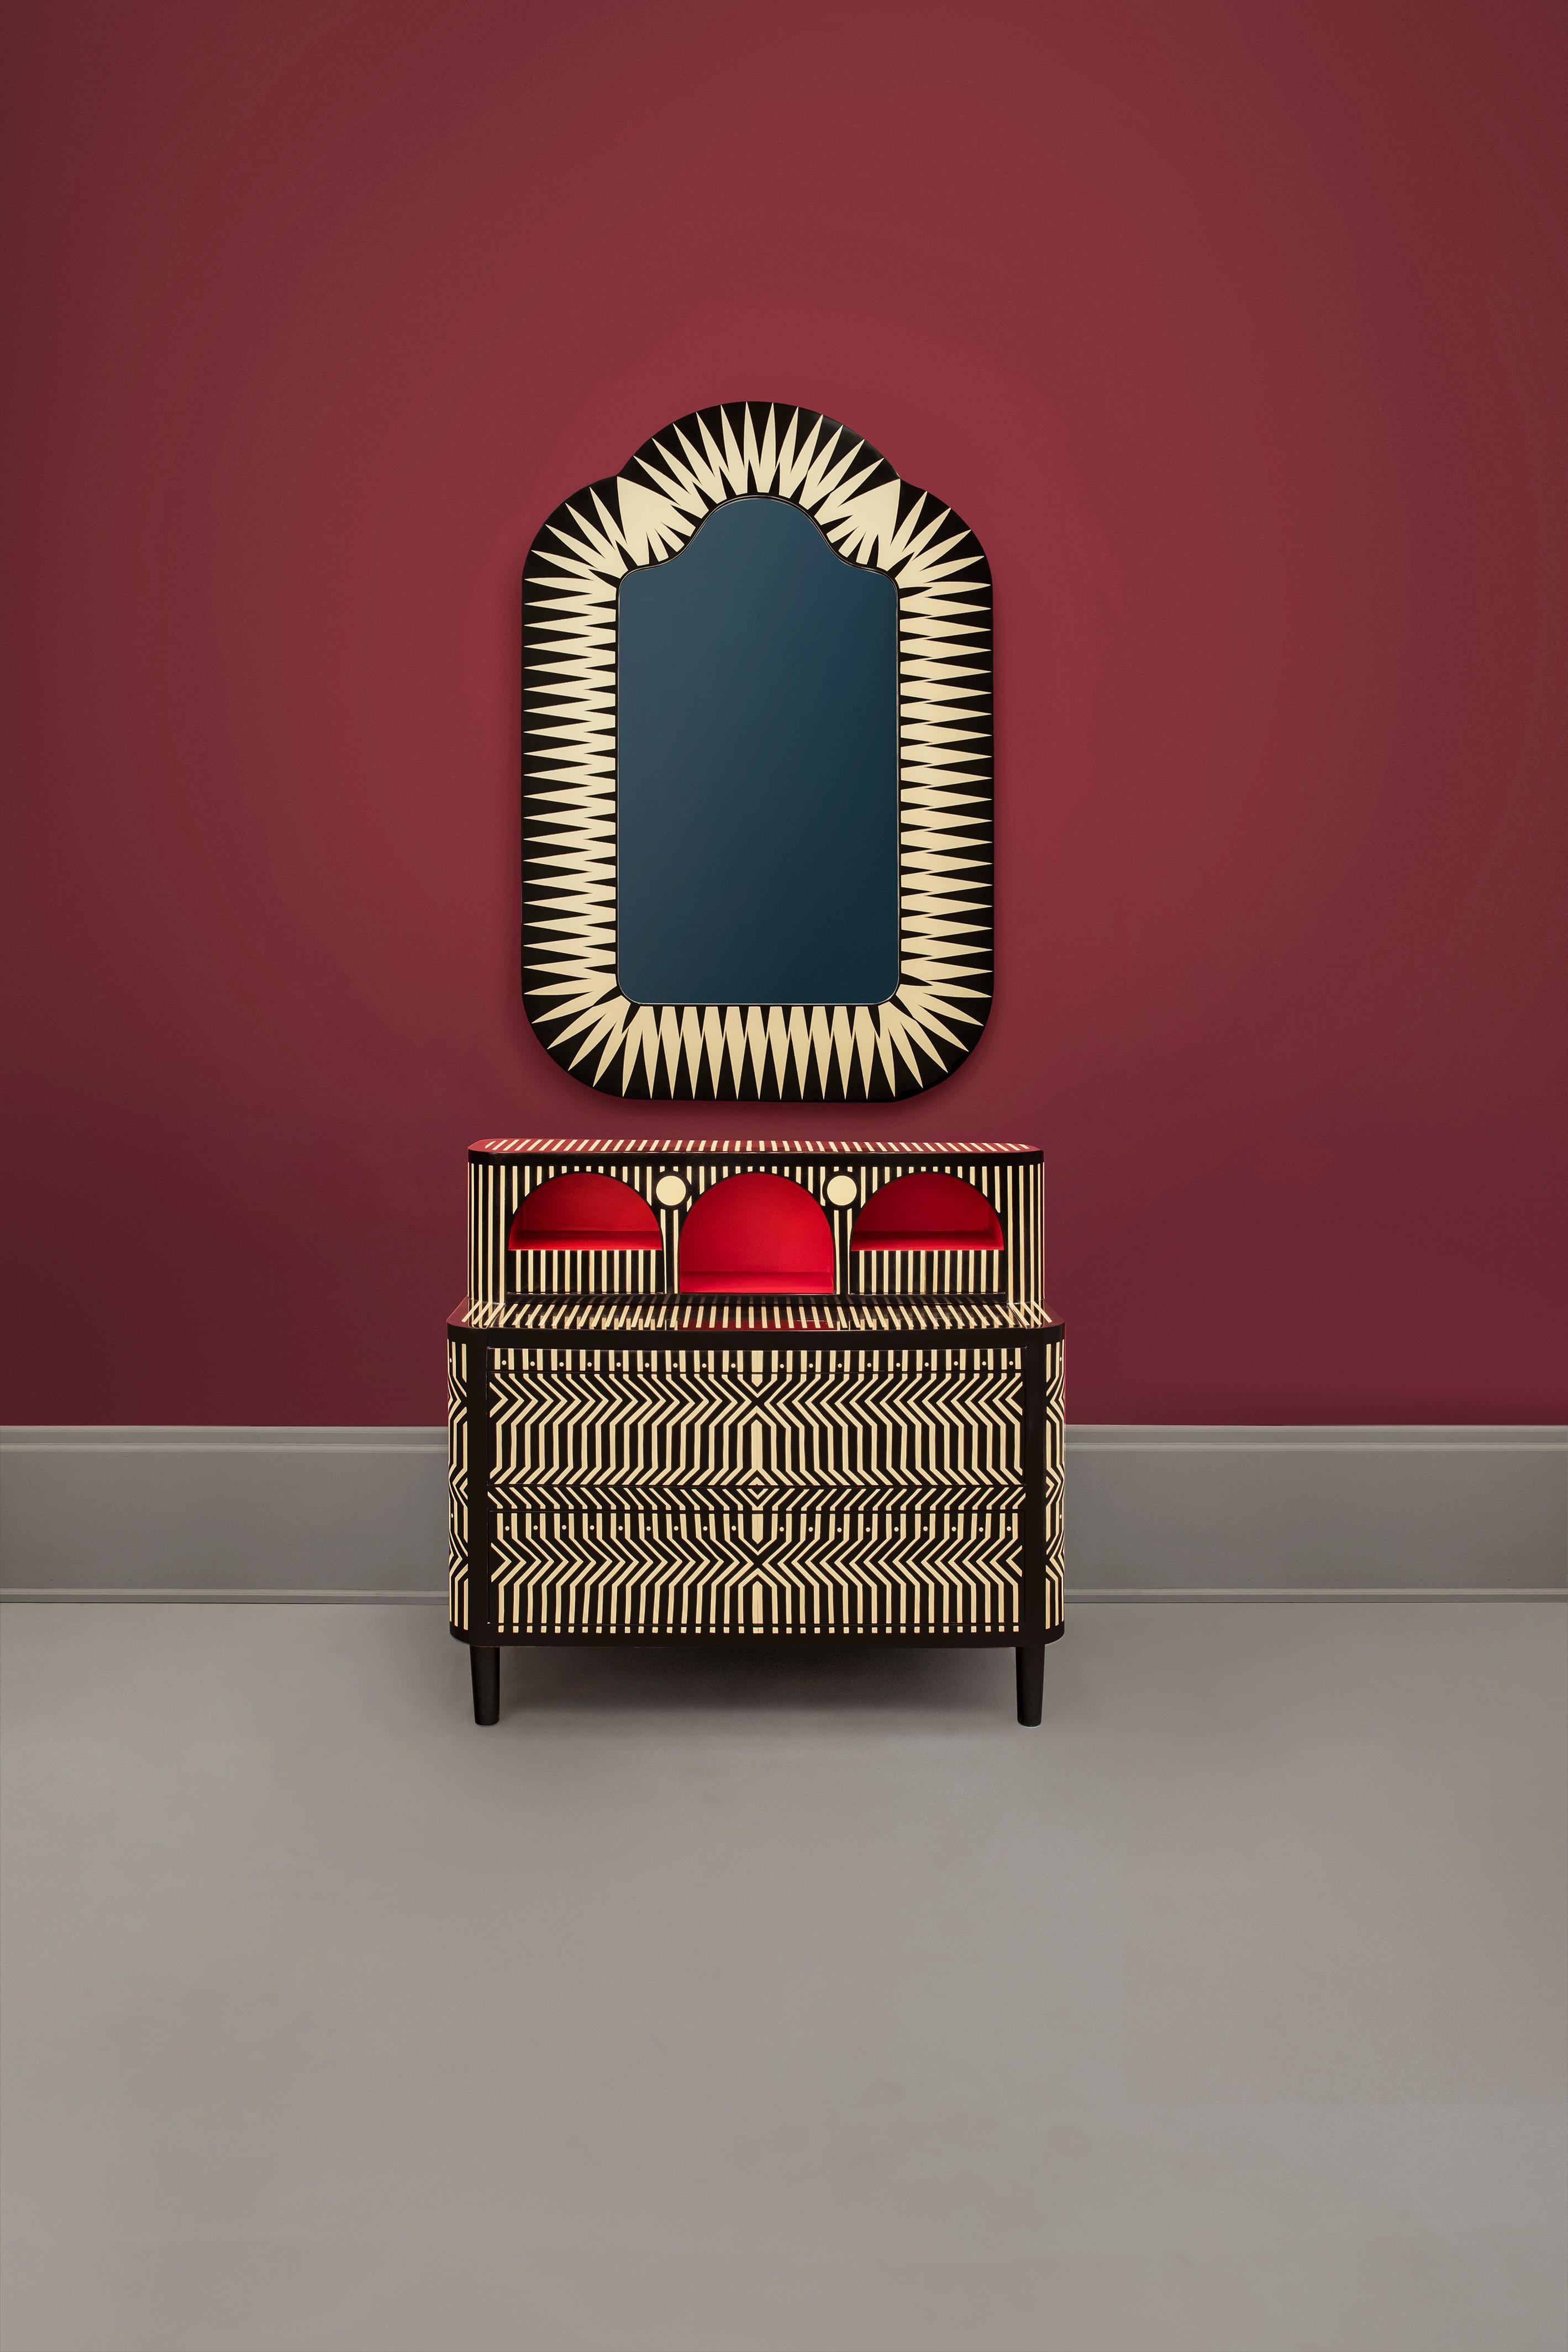 Le miroir de sol Big Parade Tall de Matteo Cibic est un grand miroir de forme amusante. Il s'impose dans n'importe quel espace intérieur.

L'artisanat indien est aussi varié que ses cultures et aussi riche que son histoire. L'art de la marqueterie